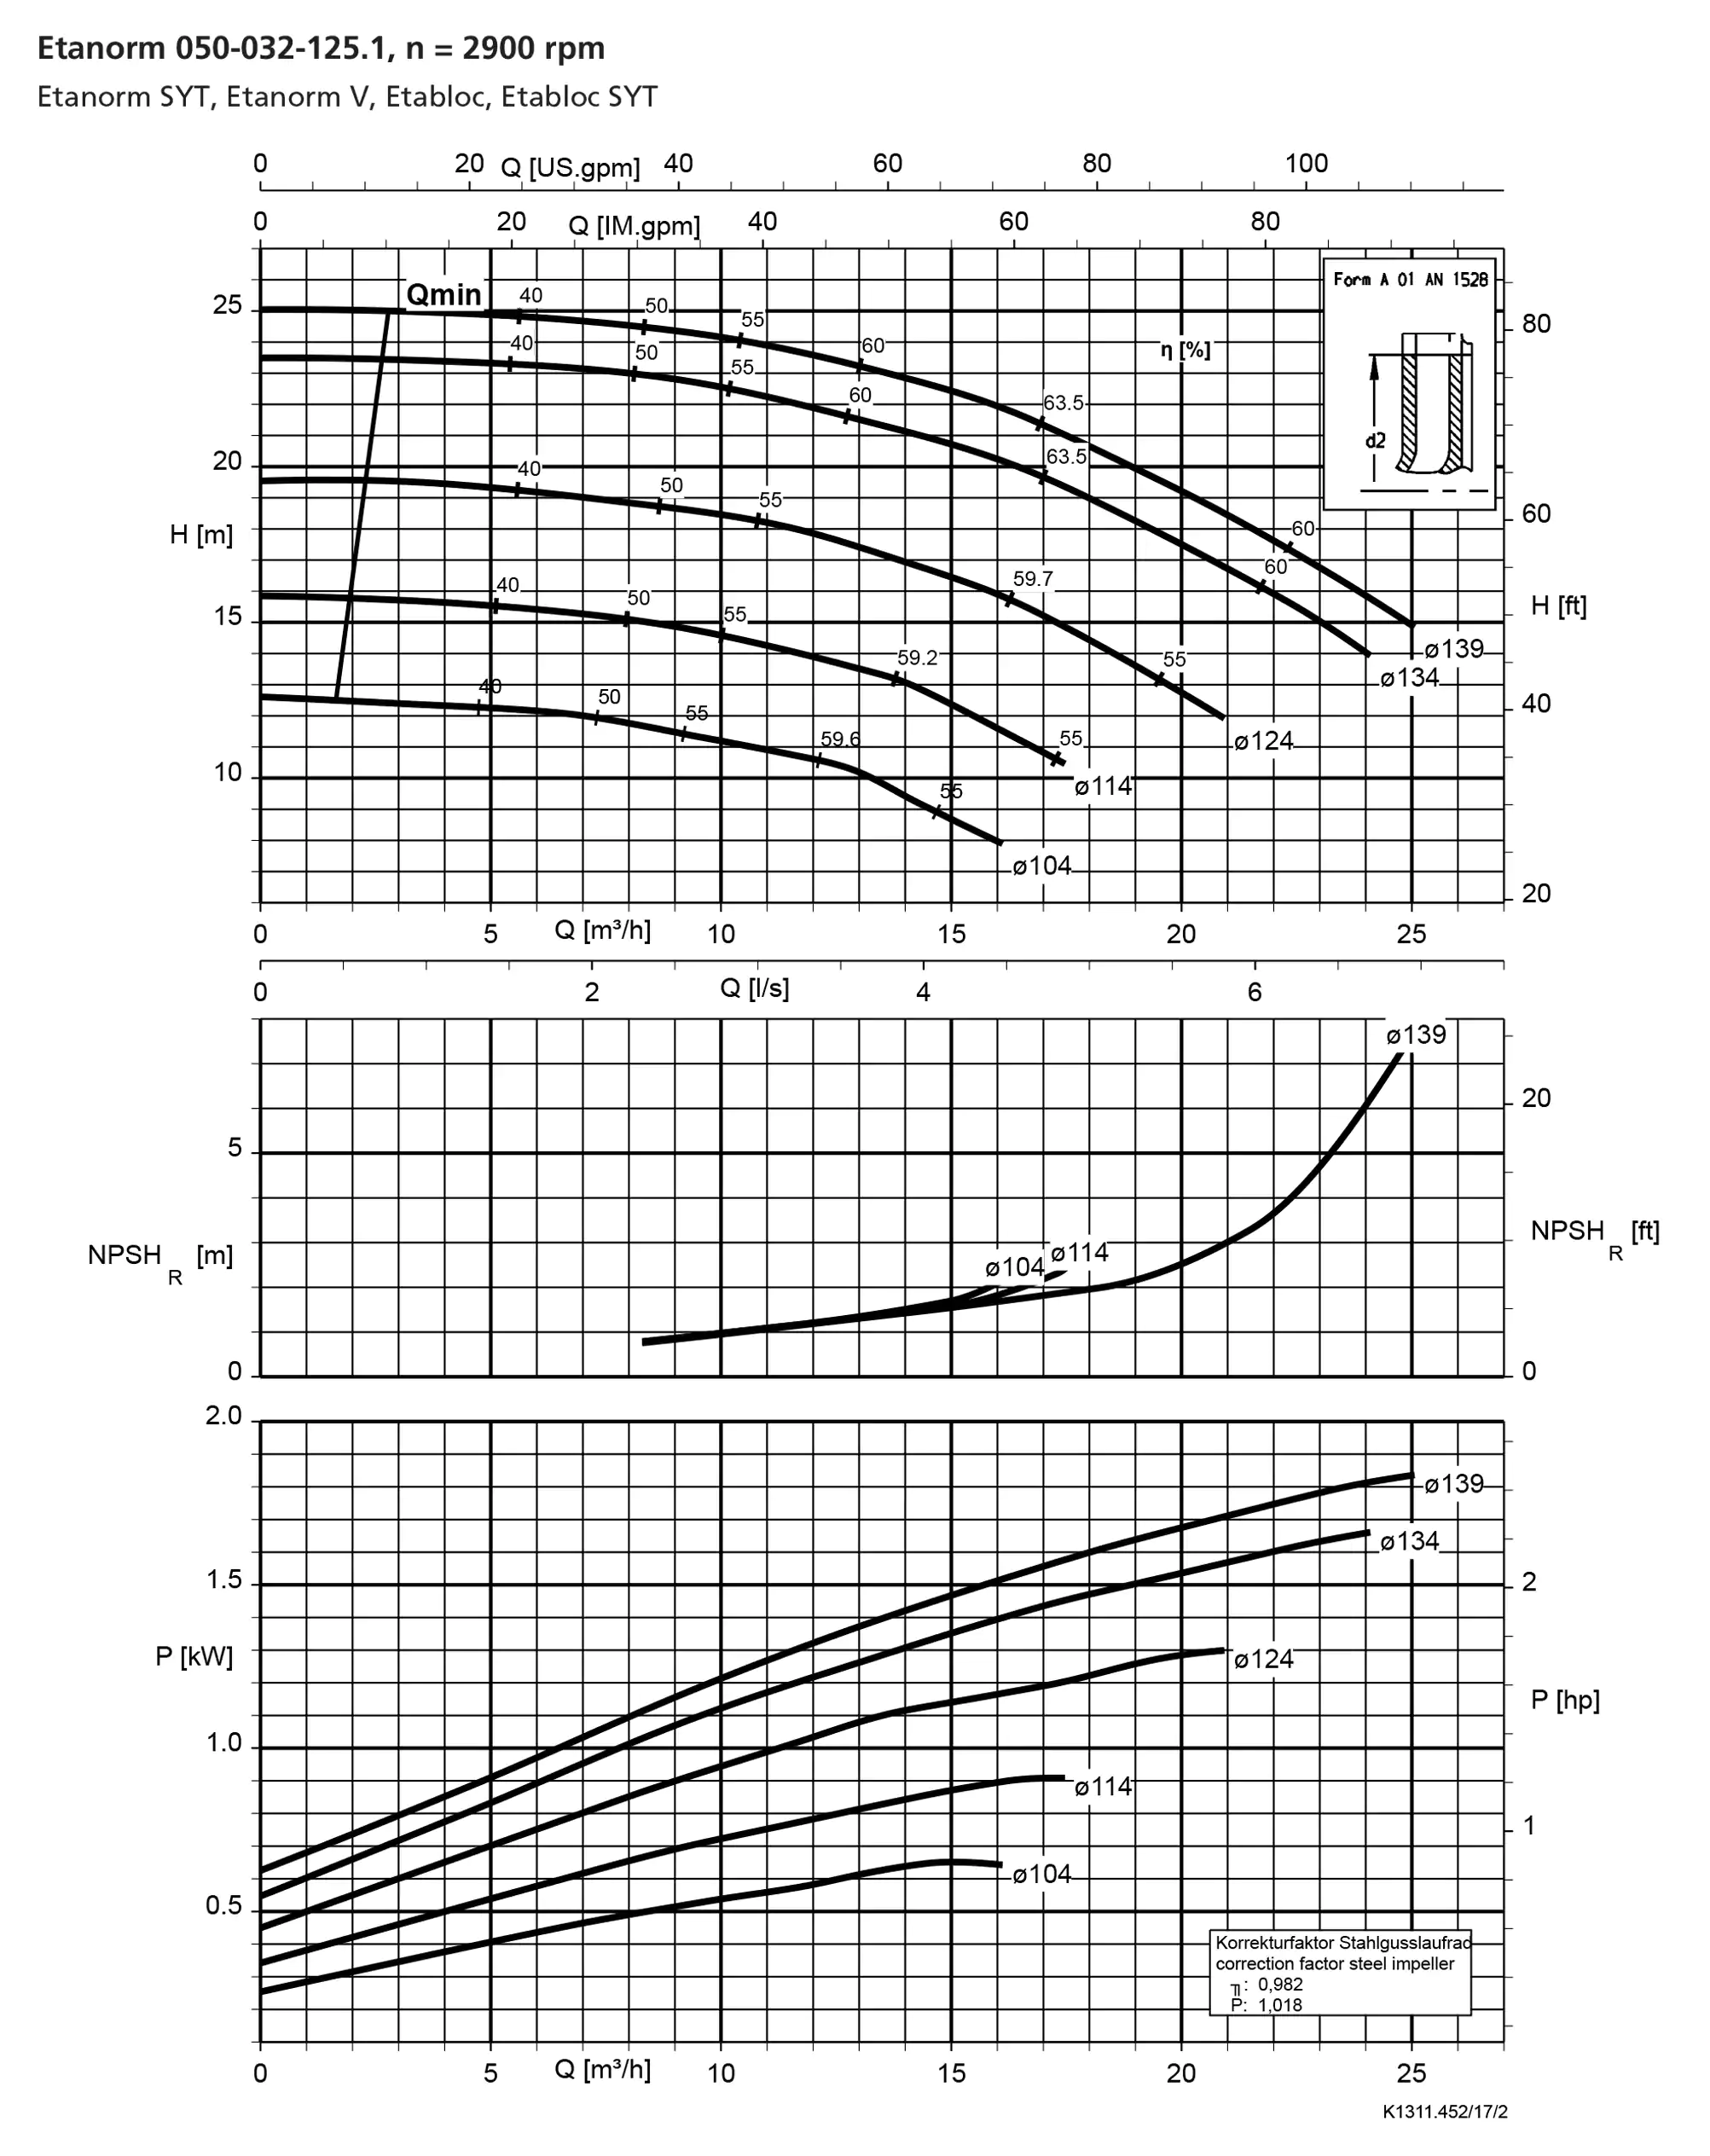 نمودار-کارکرد-پمپ-etanorm-50-32-125-1-2900